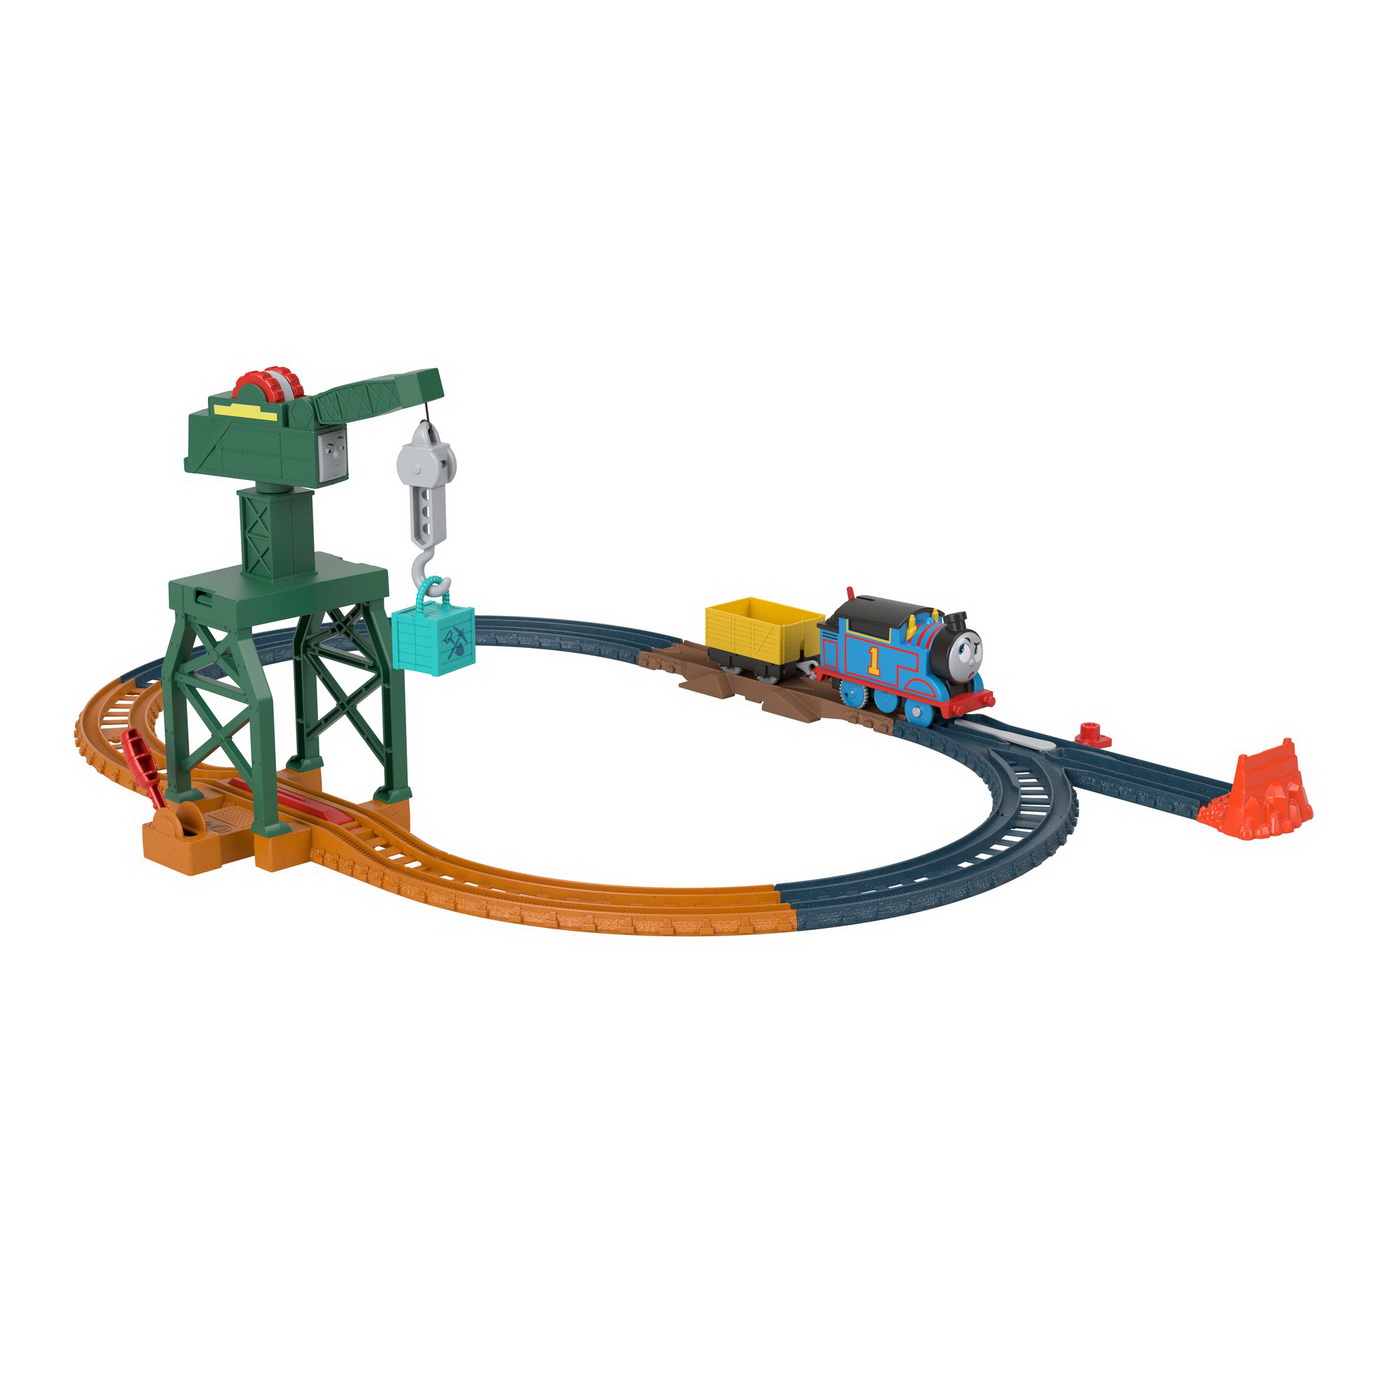 Set de joaca cu locomotiva motorizata Cranky si accesorii, +3 ani, Thomas & Friends